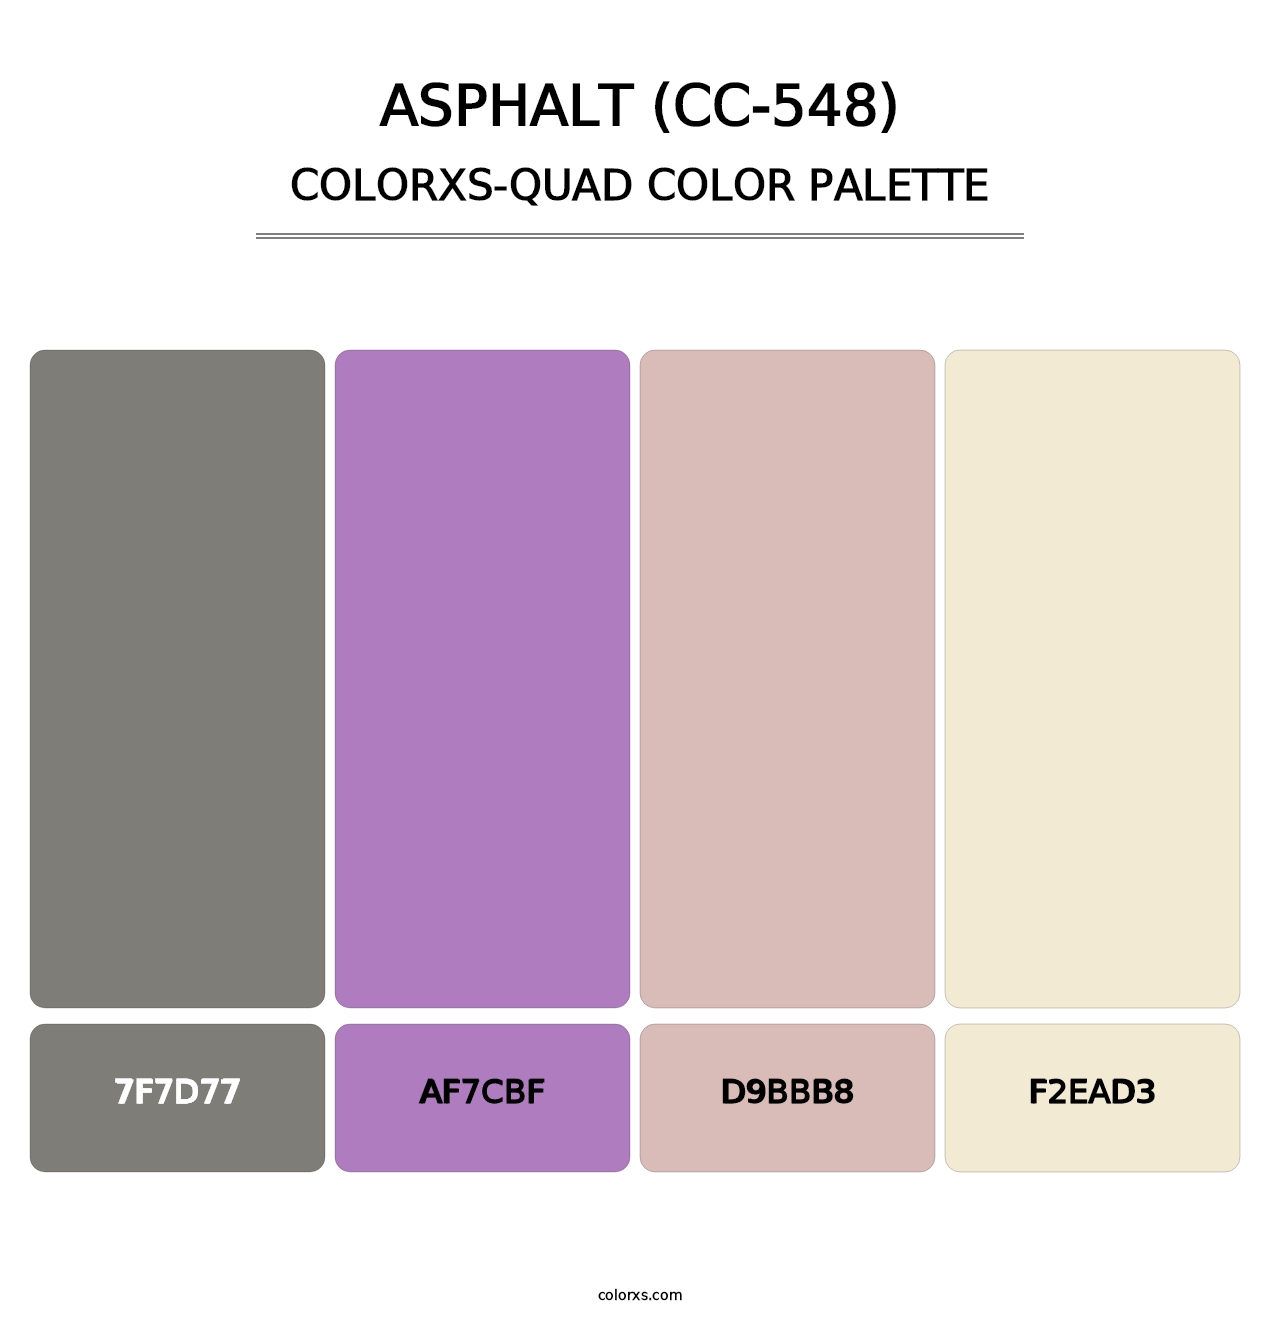 Asphalt (CC-548) - Colorxs Quad Palette